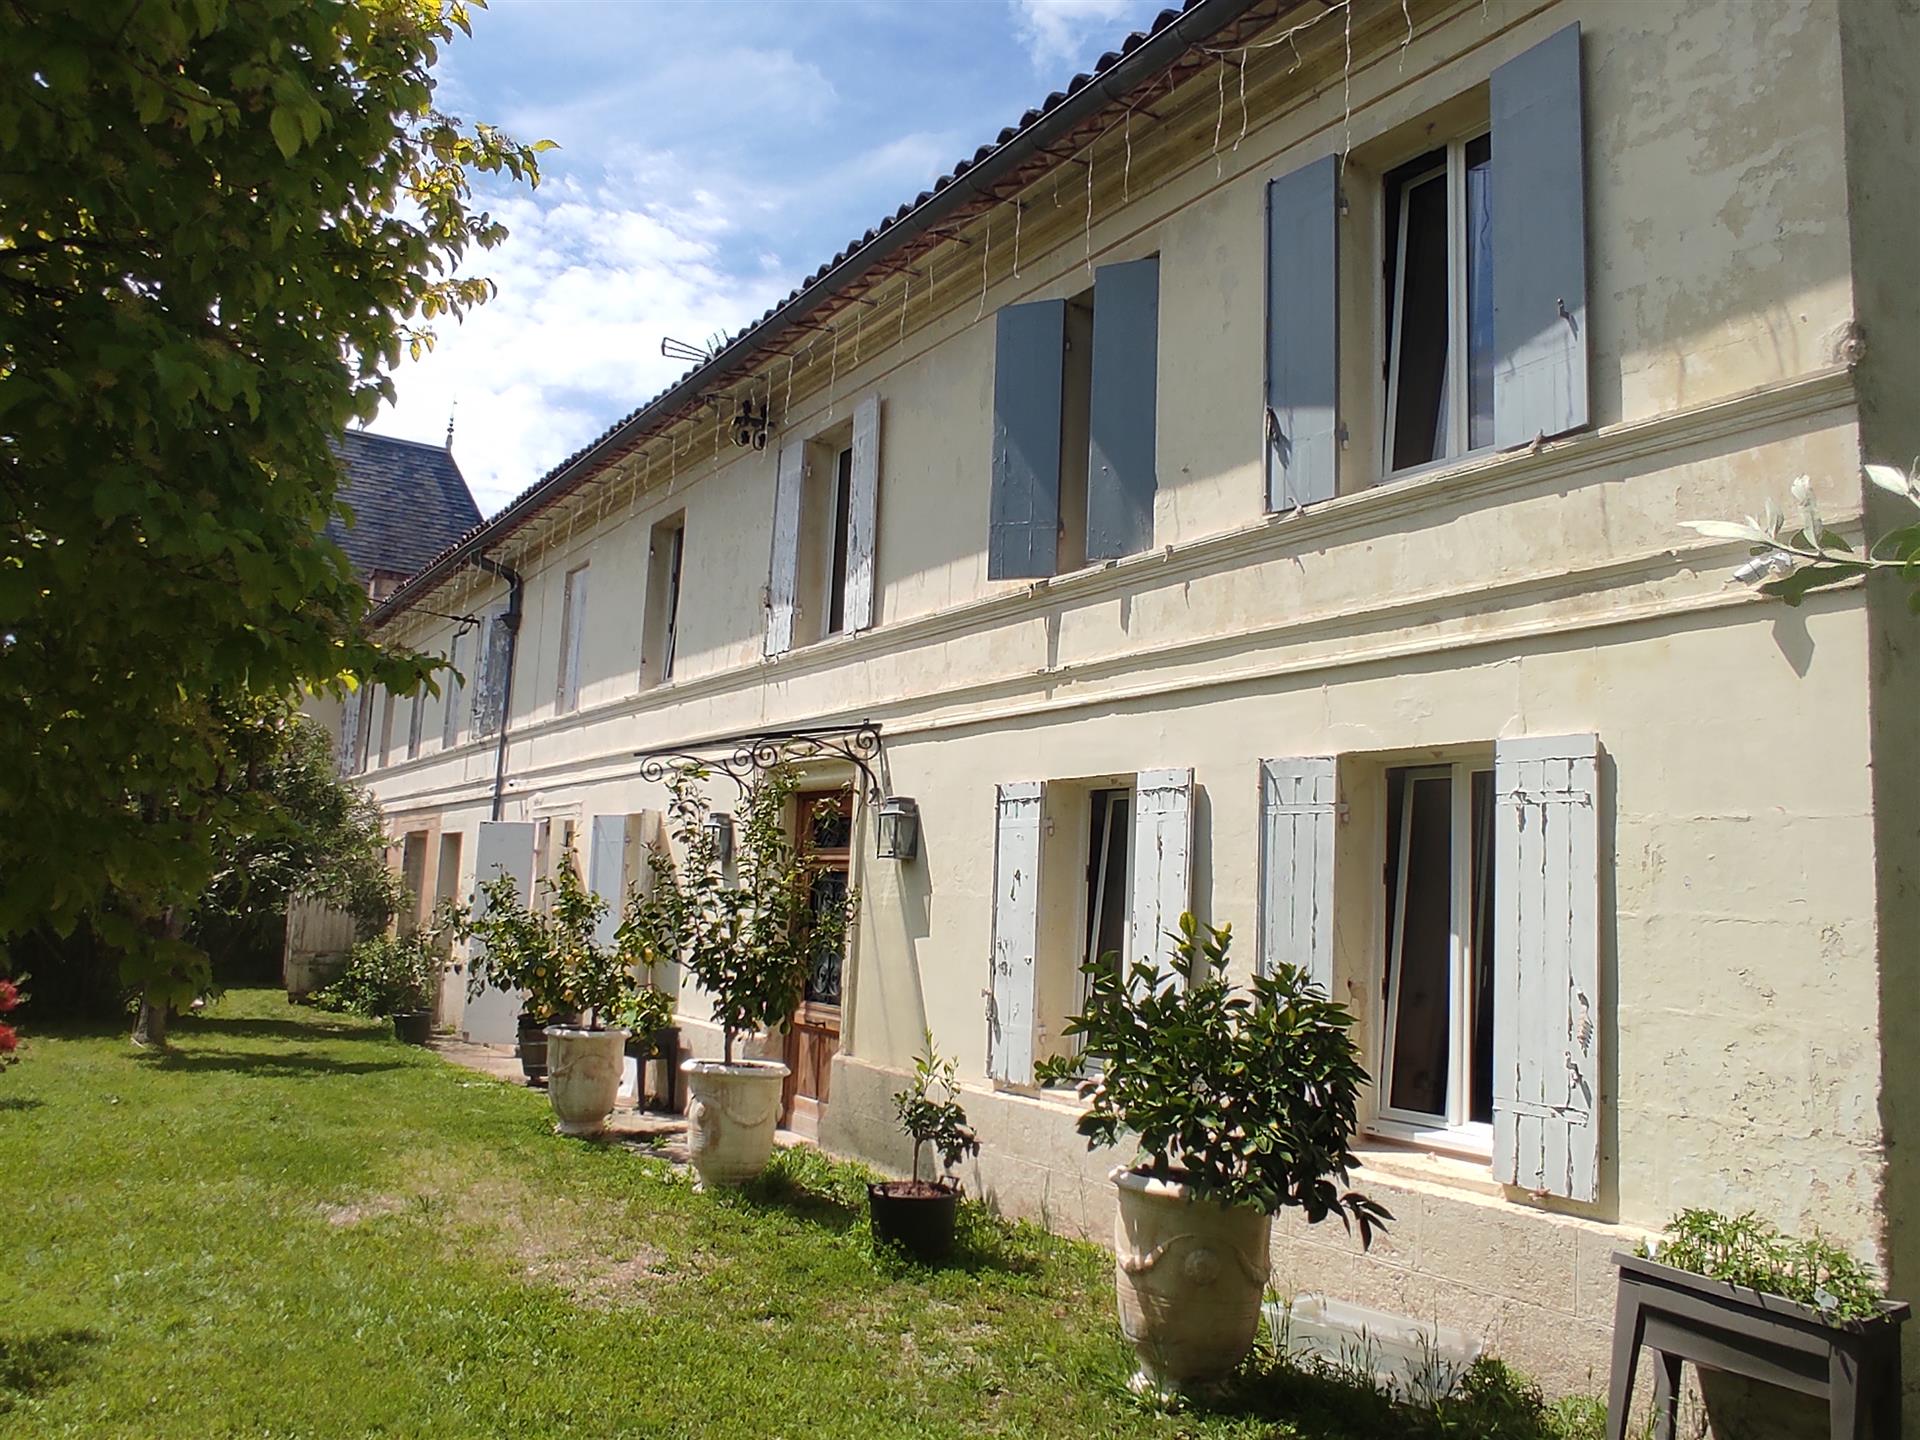 Une opportunité rare d’acheter une grande maison de campagne en pierre à Saint-André-de-Cubzac, à 2